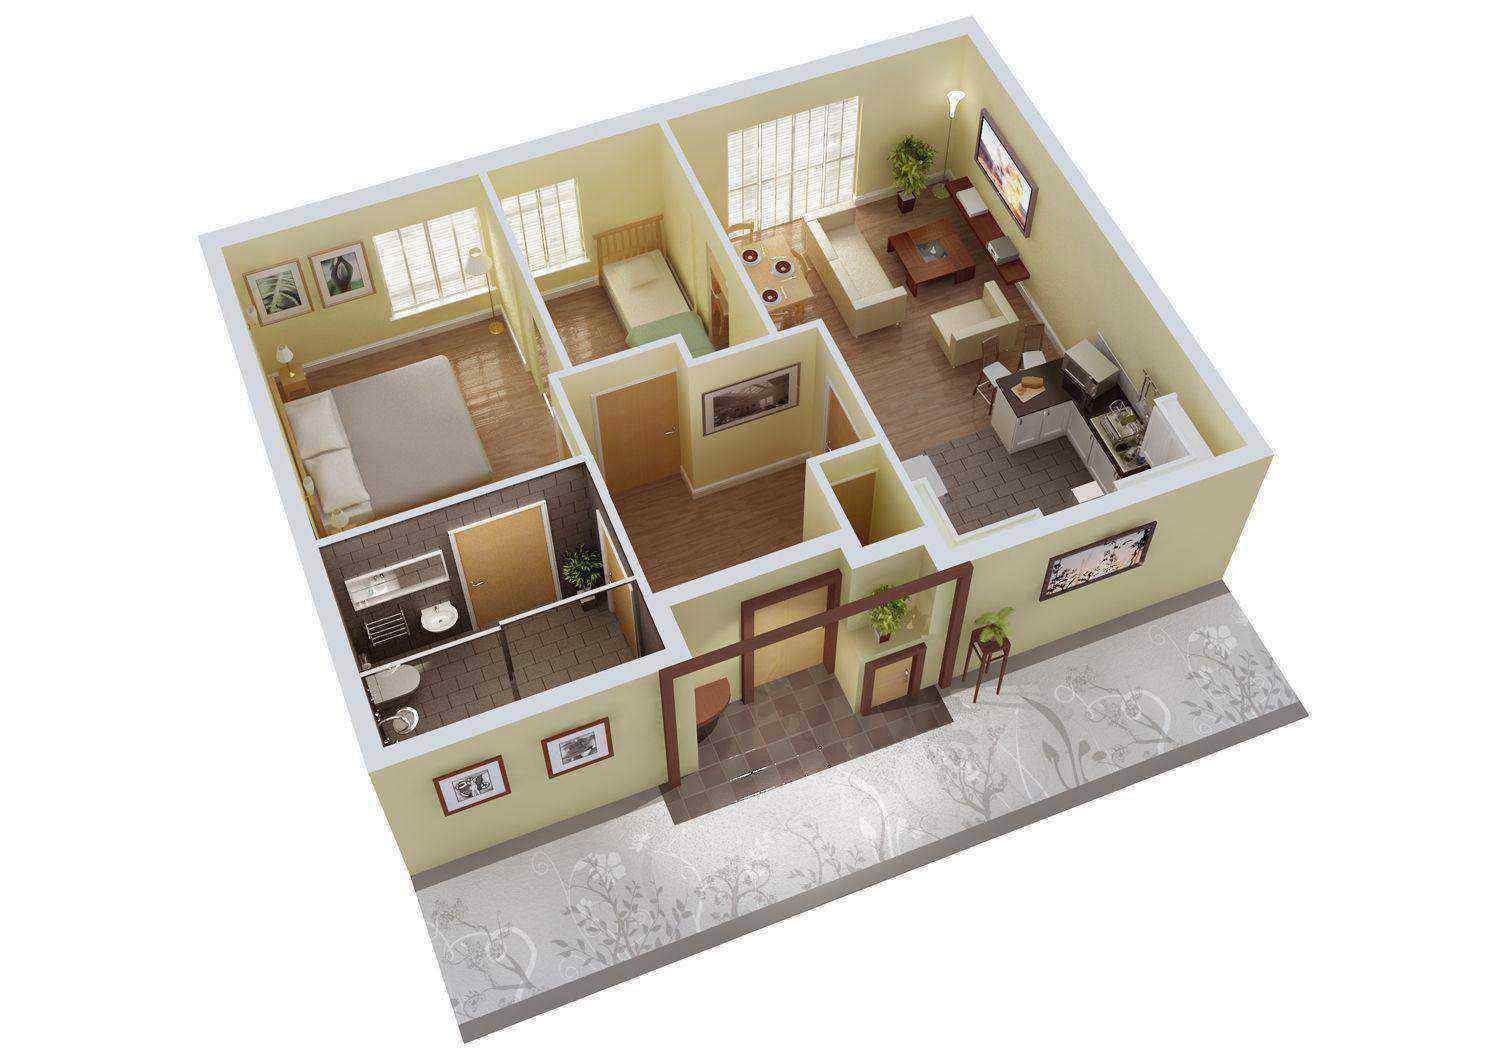 42 Contoh Desain Rumah Minimalis Ala Jepang Yang Belum Banyak Diketahui Deagam Design